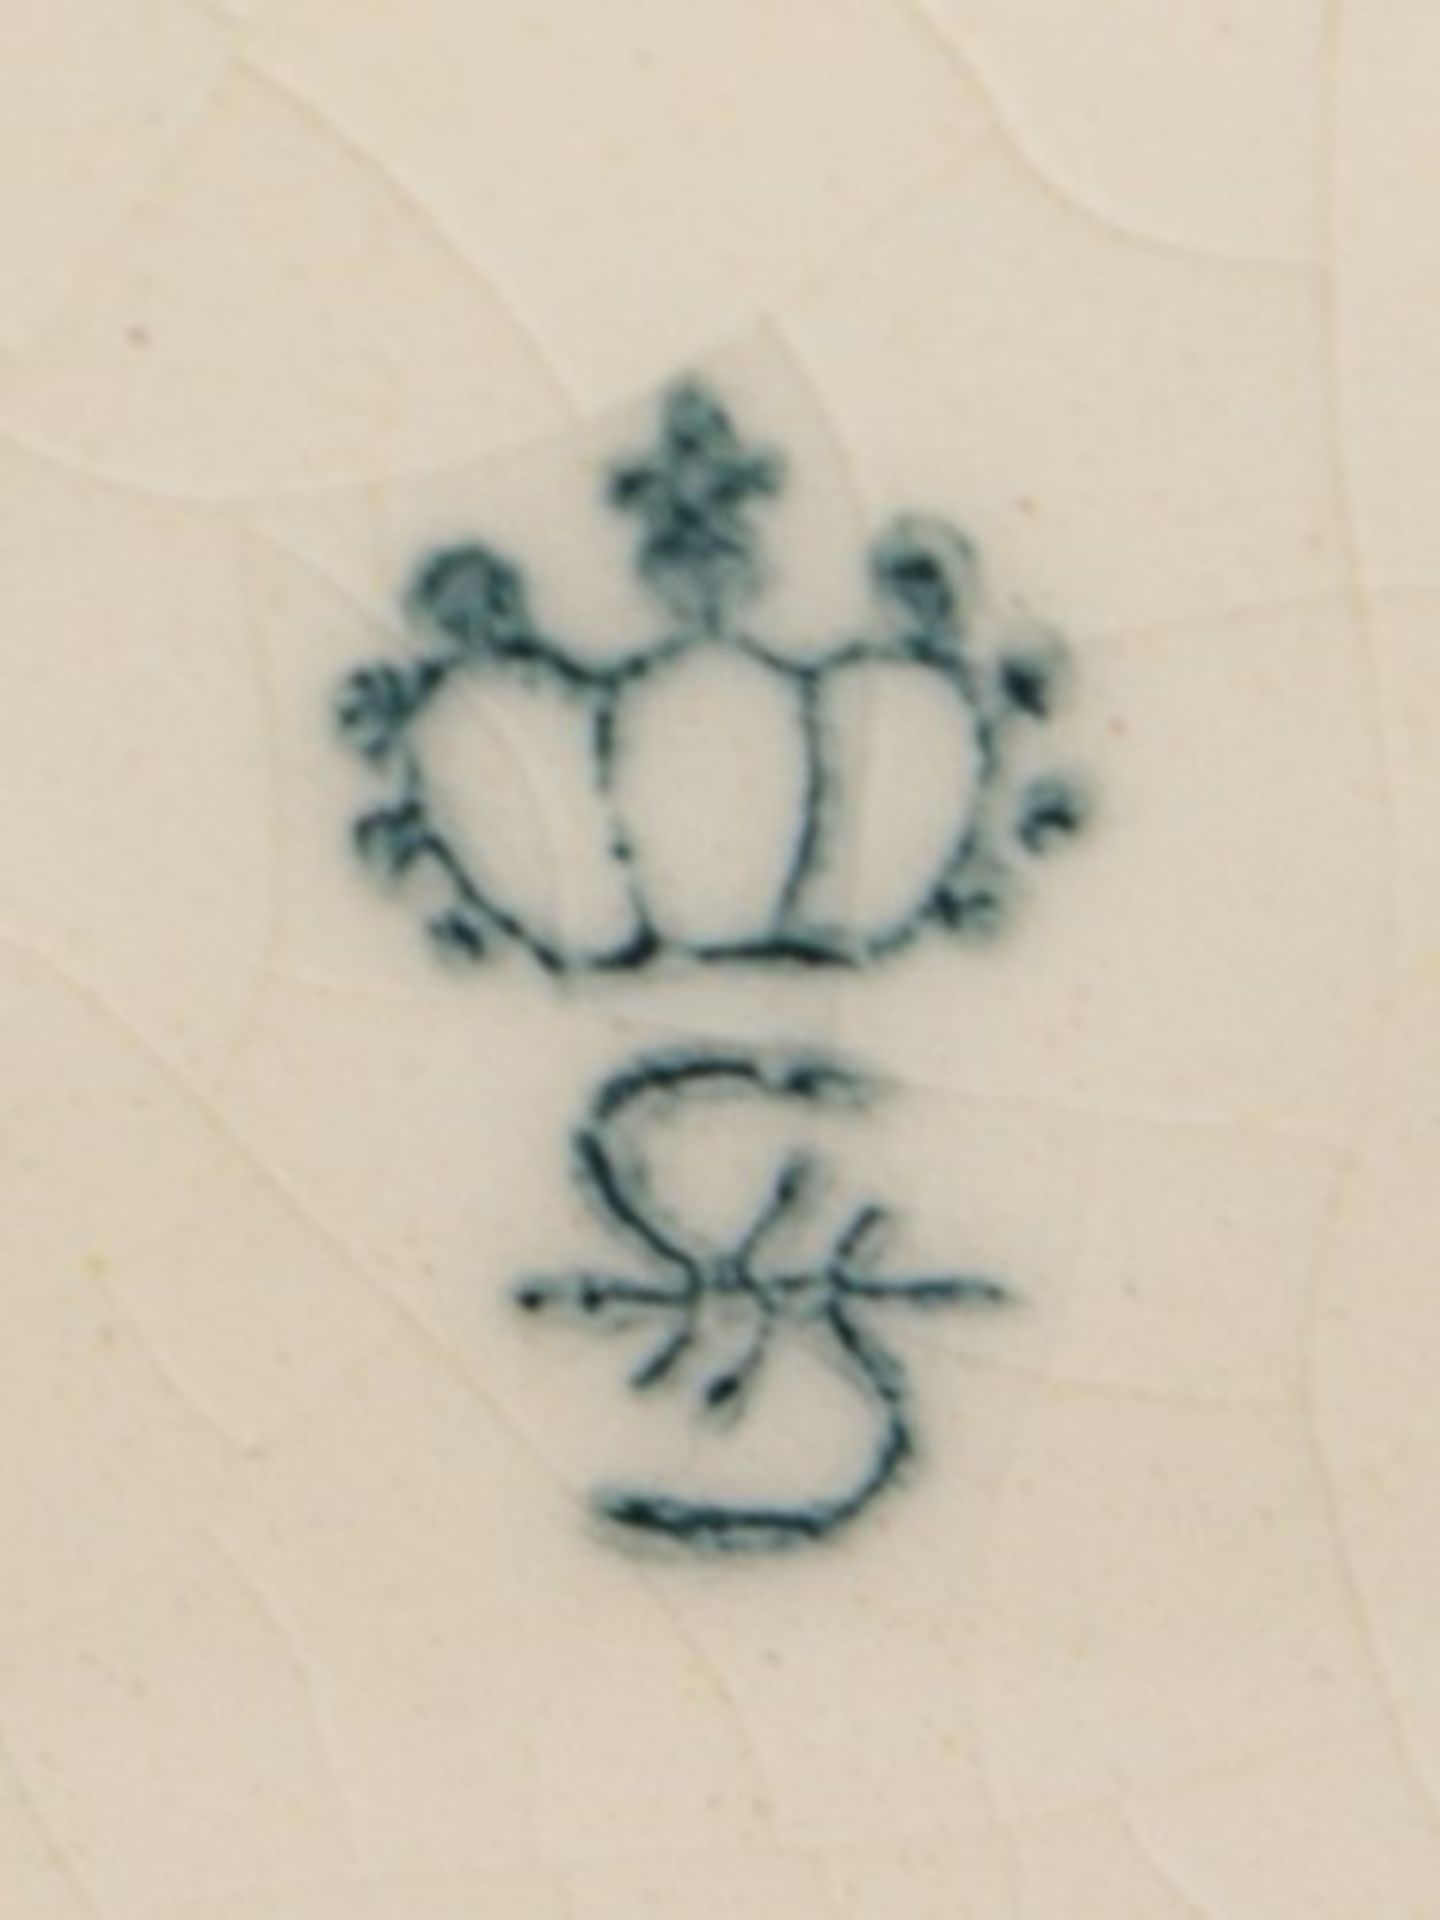 Sitzendorf - FigurStempelmarke, Steingut, vollplast. Figur eines schreitenden Löwen auf - Image 7 of 7